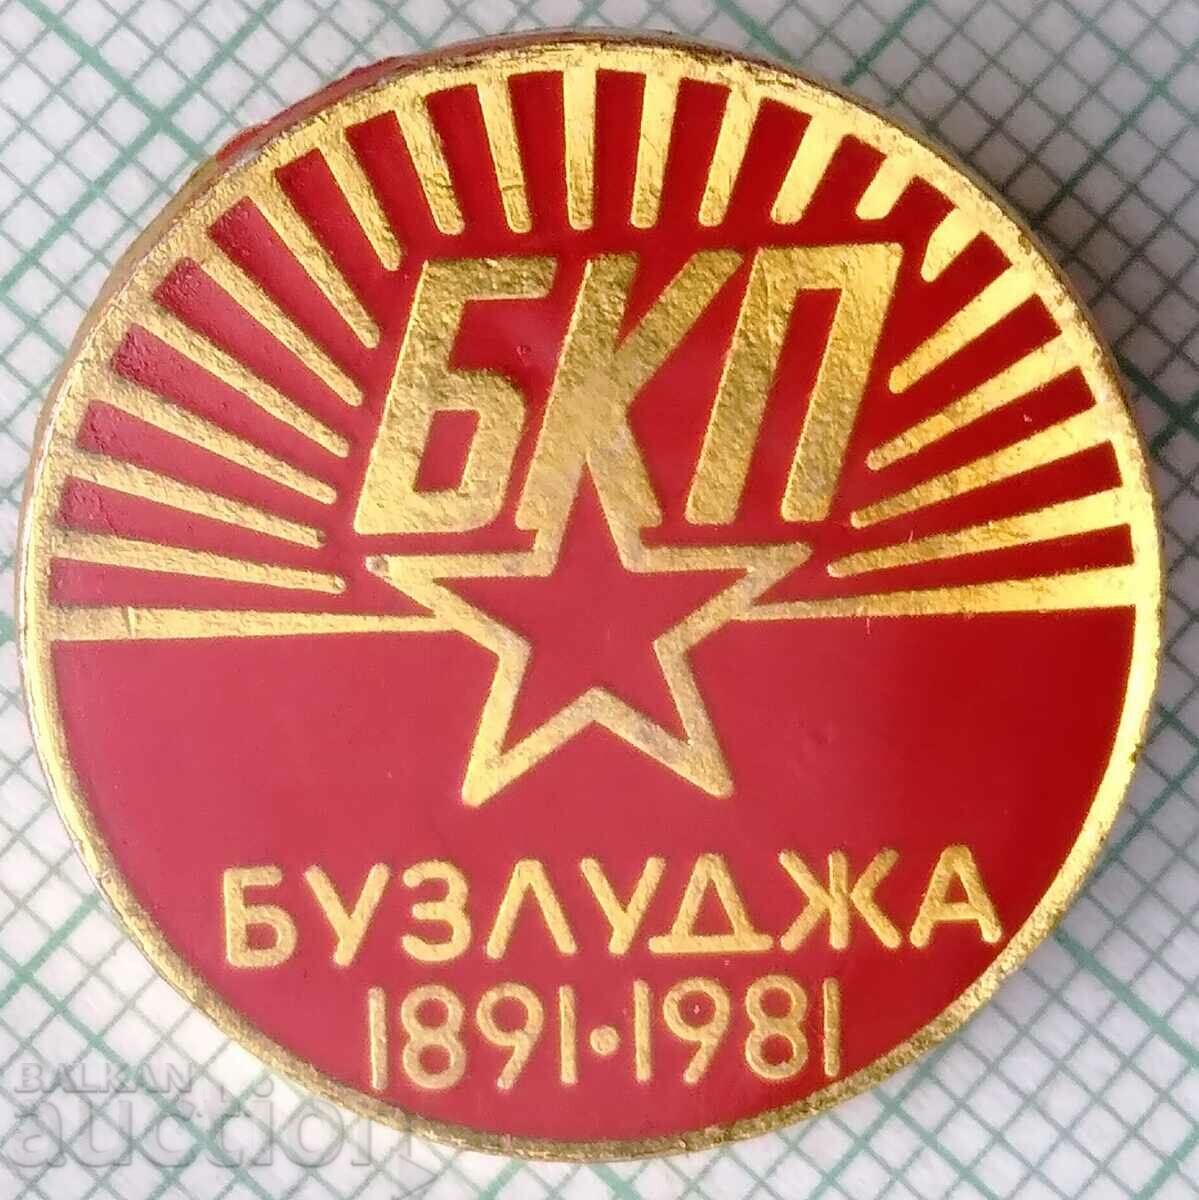 12731 Σήμα - BKP Buzludzha 1891-1981